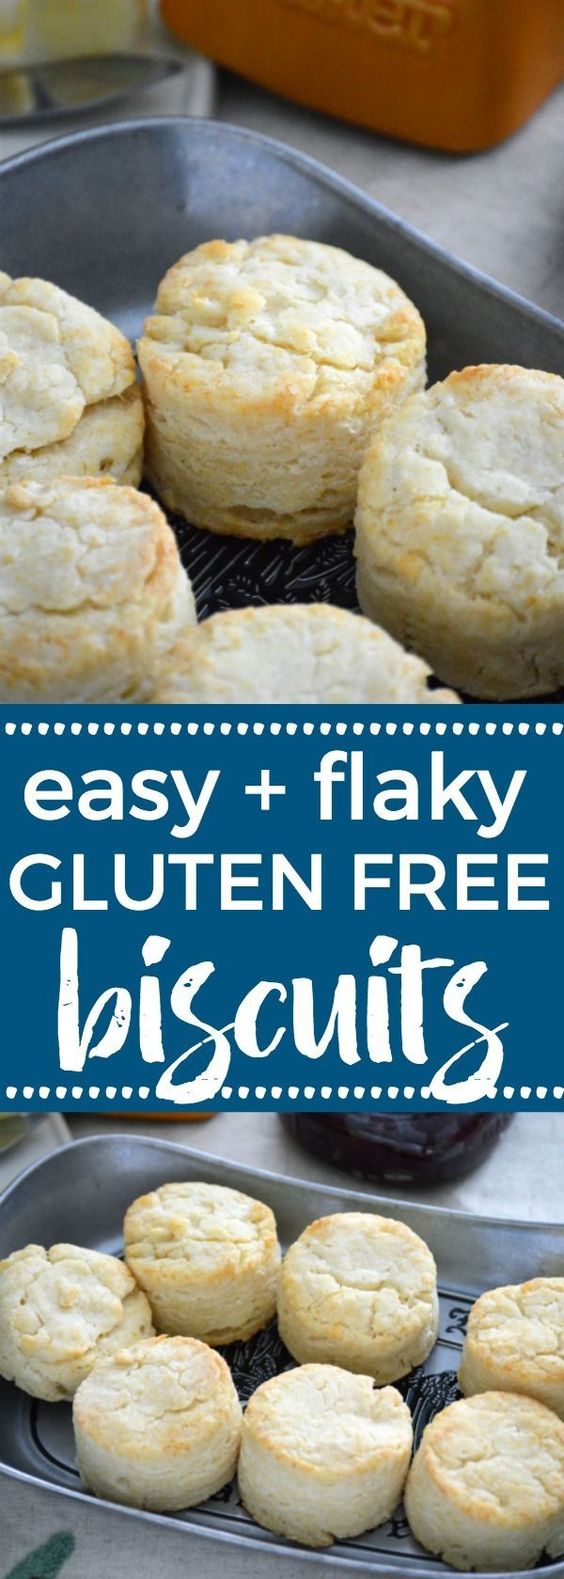 Gluten Free Biscuits